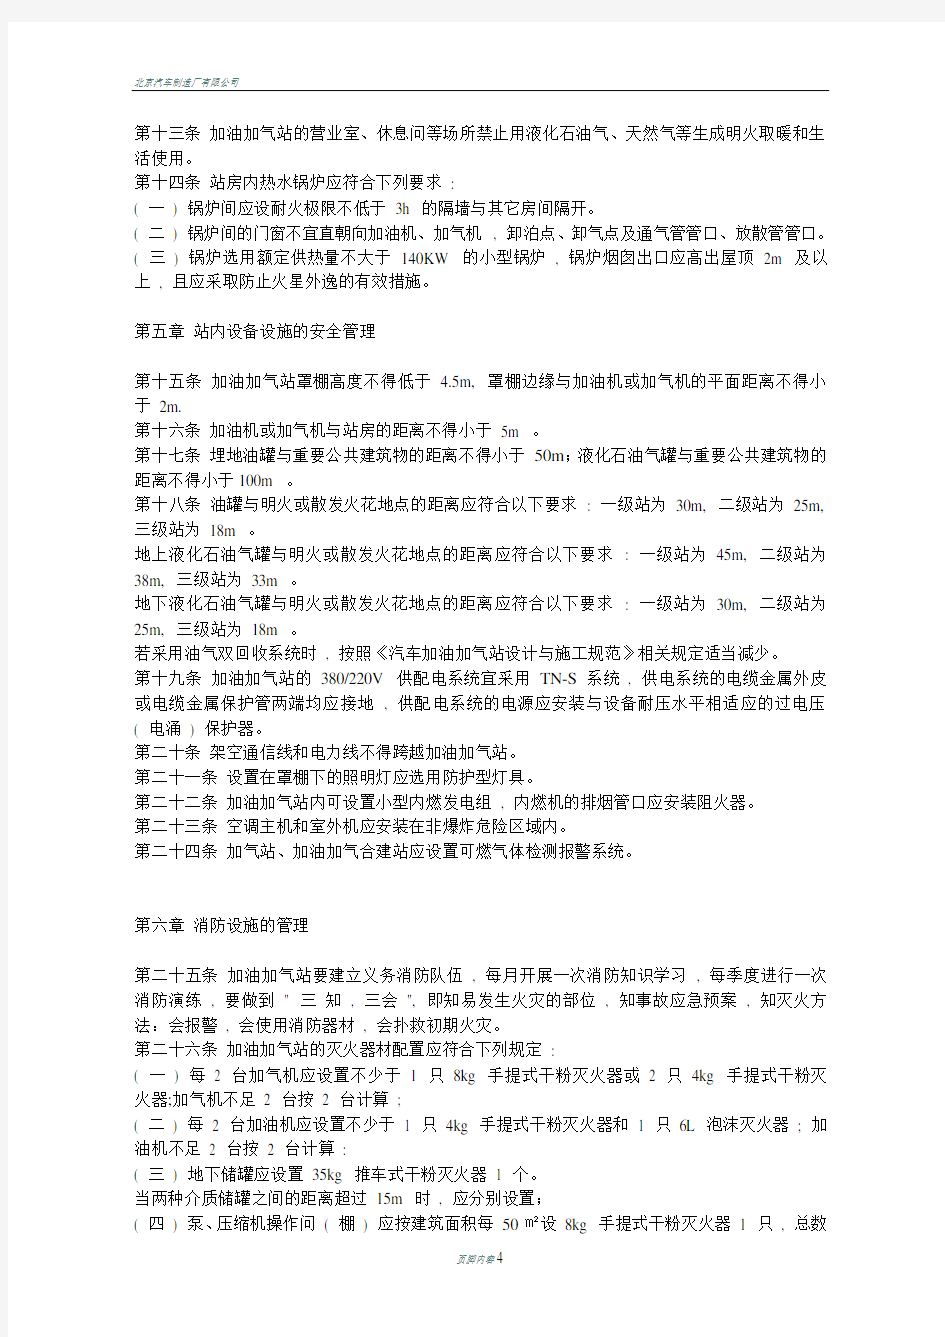 北京汽车加油加气站安全管理规范〈试行〉-北京安监局